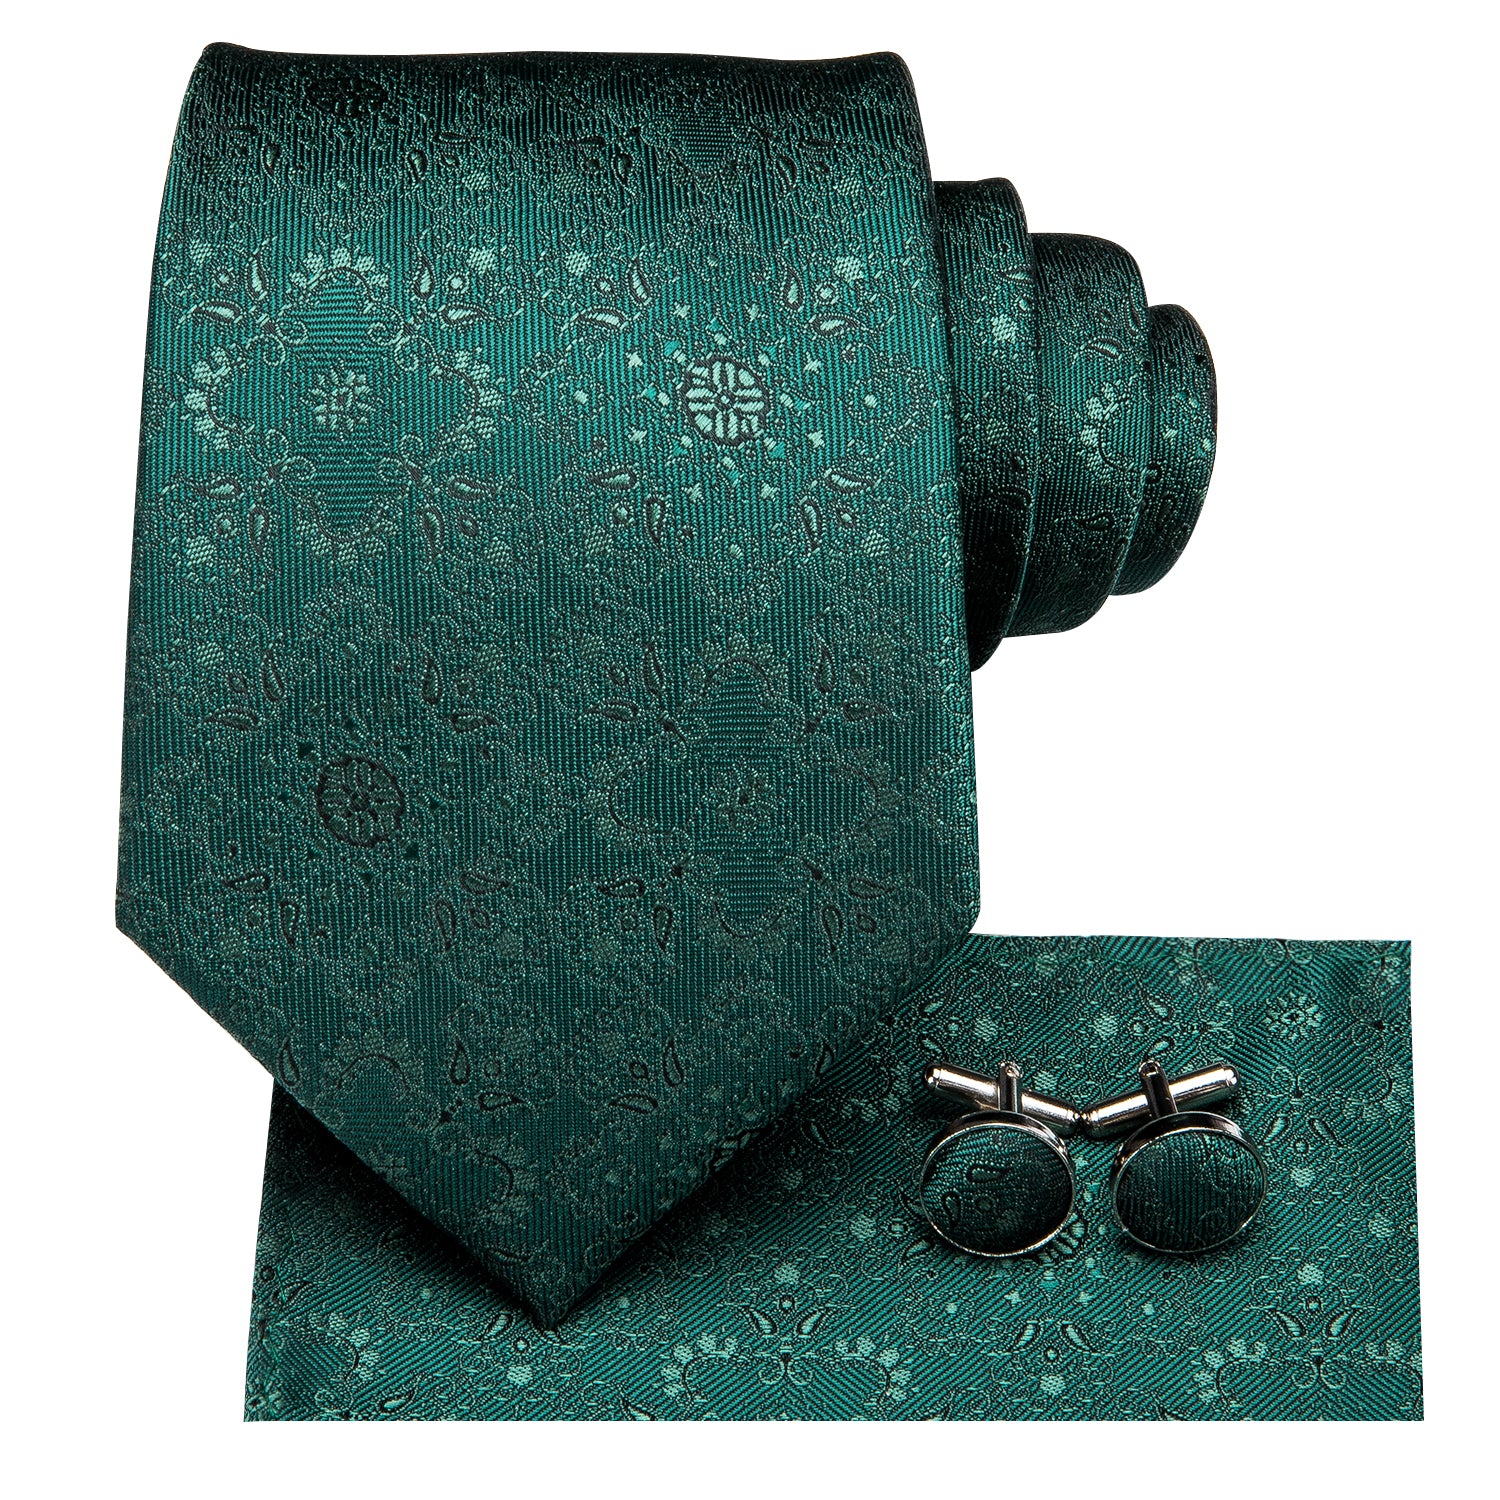 Hi-Tie Dark Green Floral Men's Wedding Tie Pocket Square Cufflinks Set